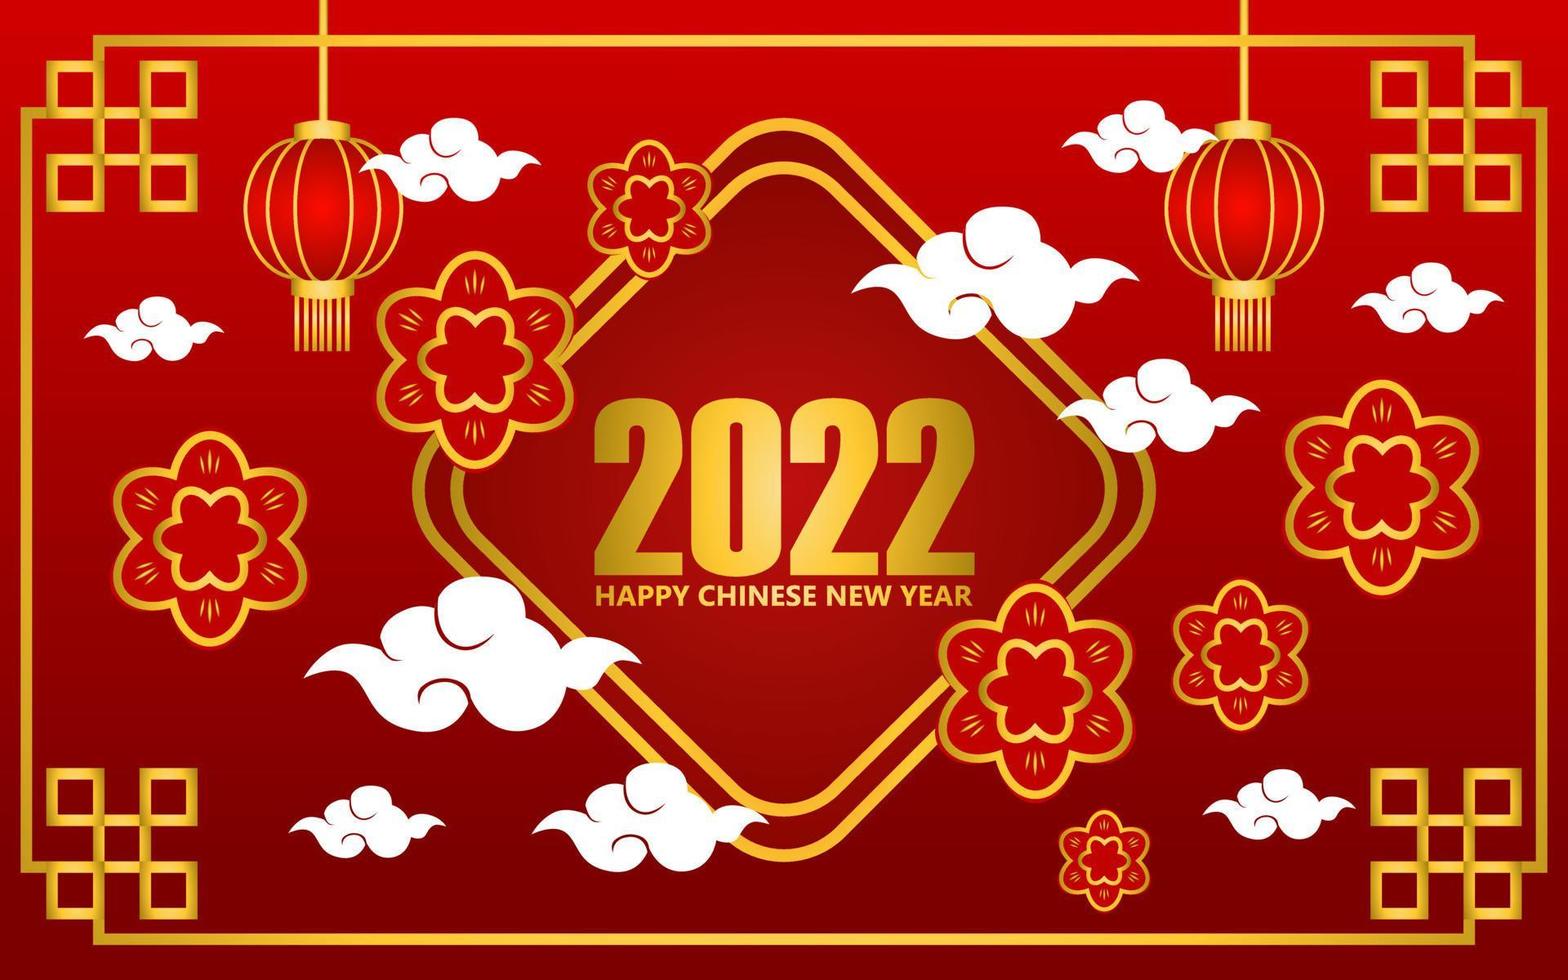 Diseño de fondo de saludo de año nuevo chino 2022 en color rojo. diseños para pancartas y portadas. diseño de adorno chino vector